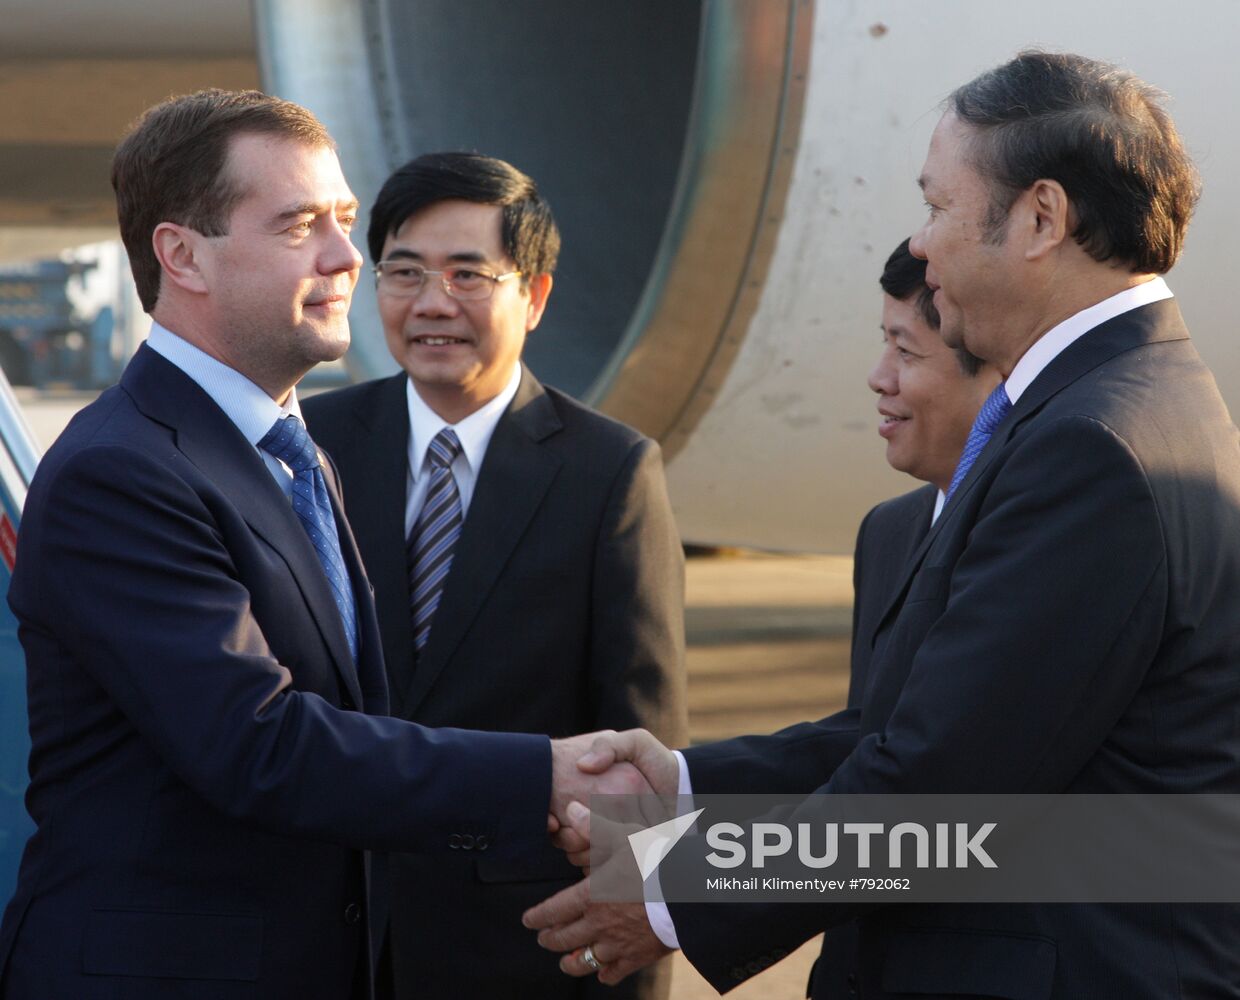 Dmitry Medvedev arrives in Hanoi for ASEAN summit